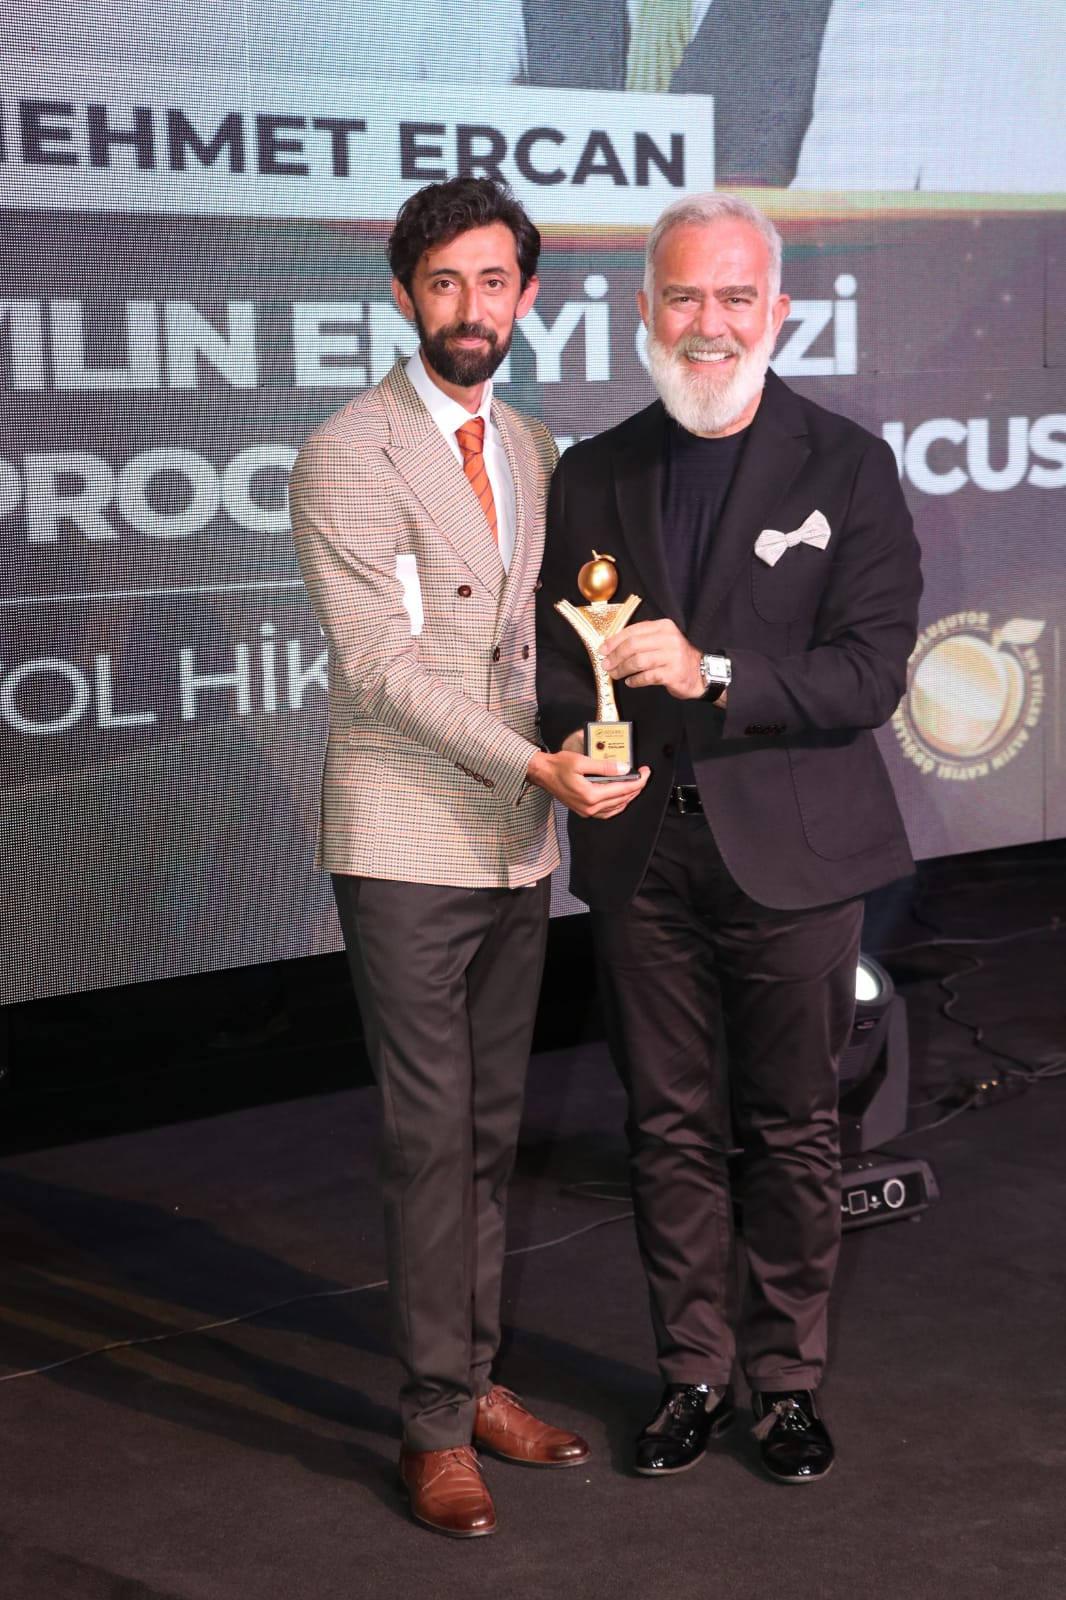 Sunucu Mehmet Ercan ödülünü Payitaht Abdülhamid dizisindeki Tahsin Paşa rolüyle dünya çapında oyunculuk başarısı yakalayan Bahadır Yenişehirlioğlu'nun elinden aldı.